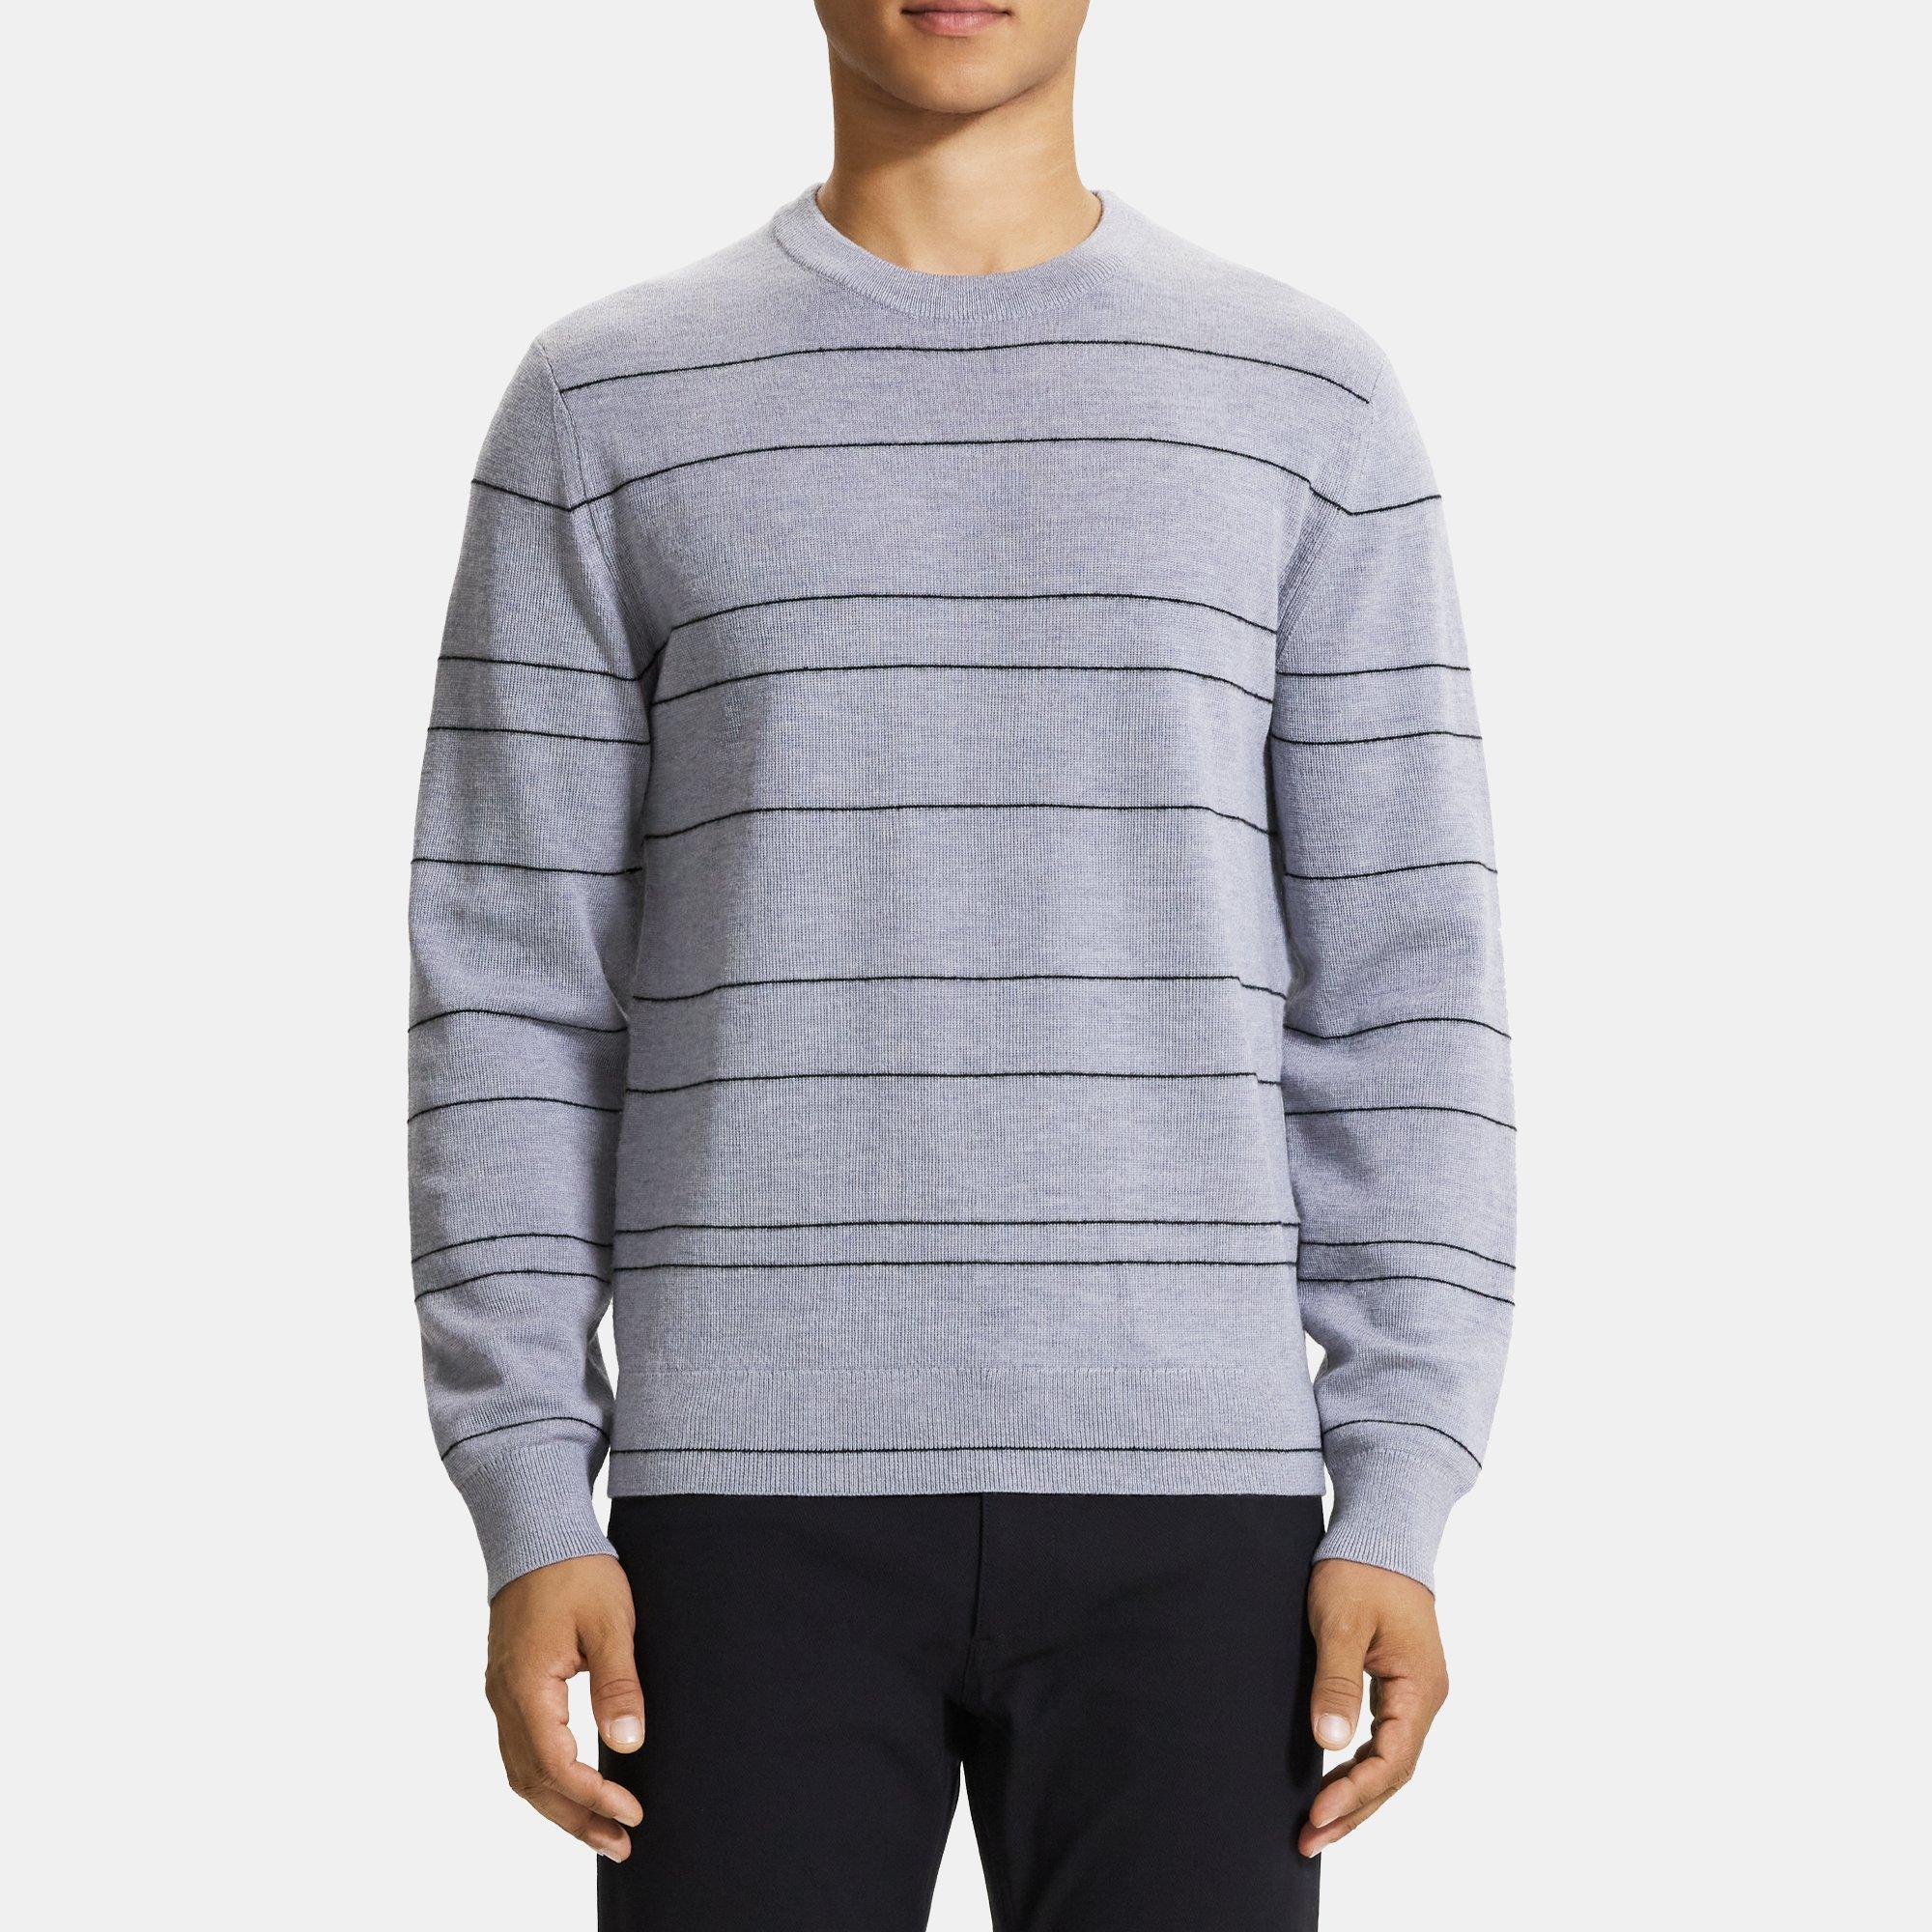 띠어리 Theory Striped Sweater in Merino Wool,GREY MELANGE MULTI